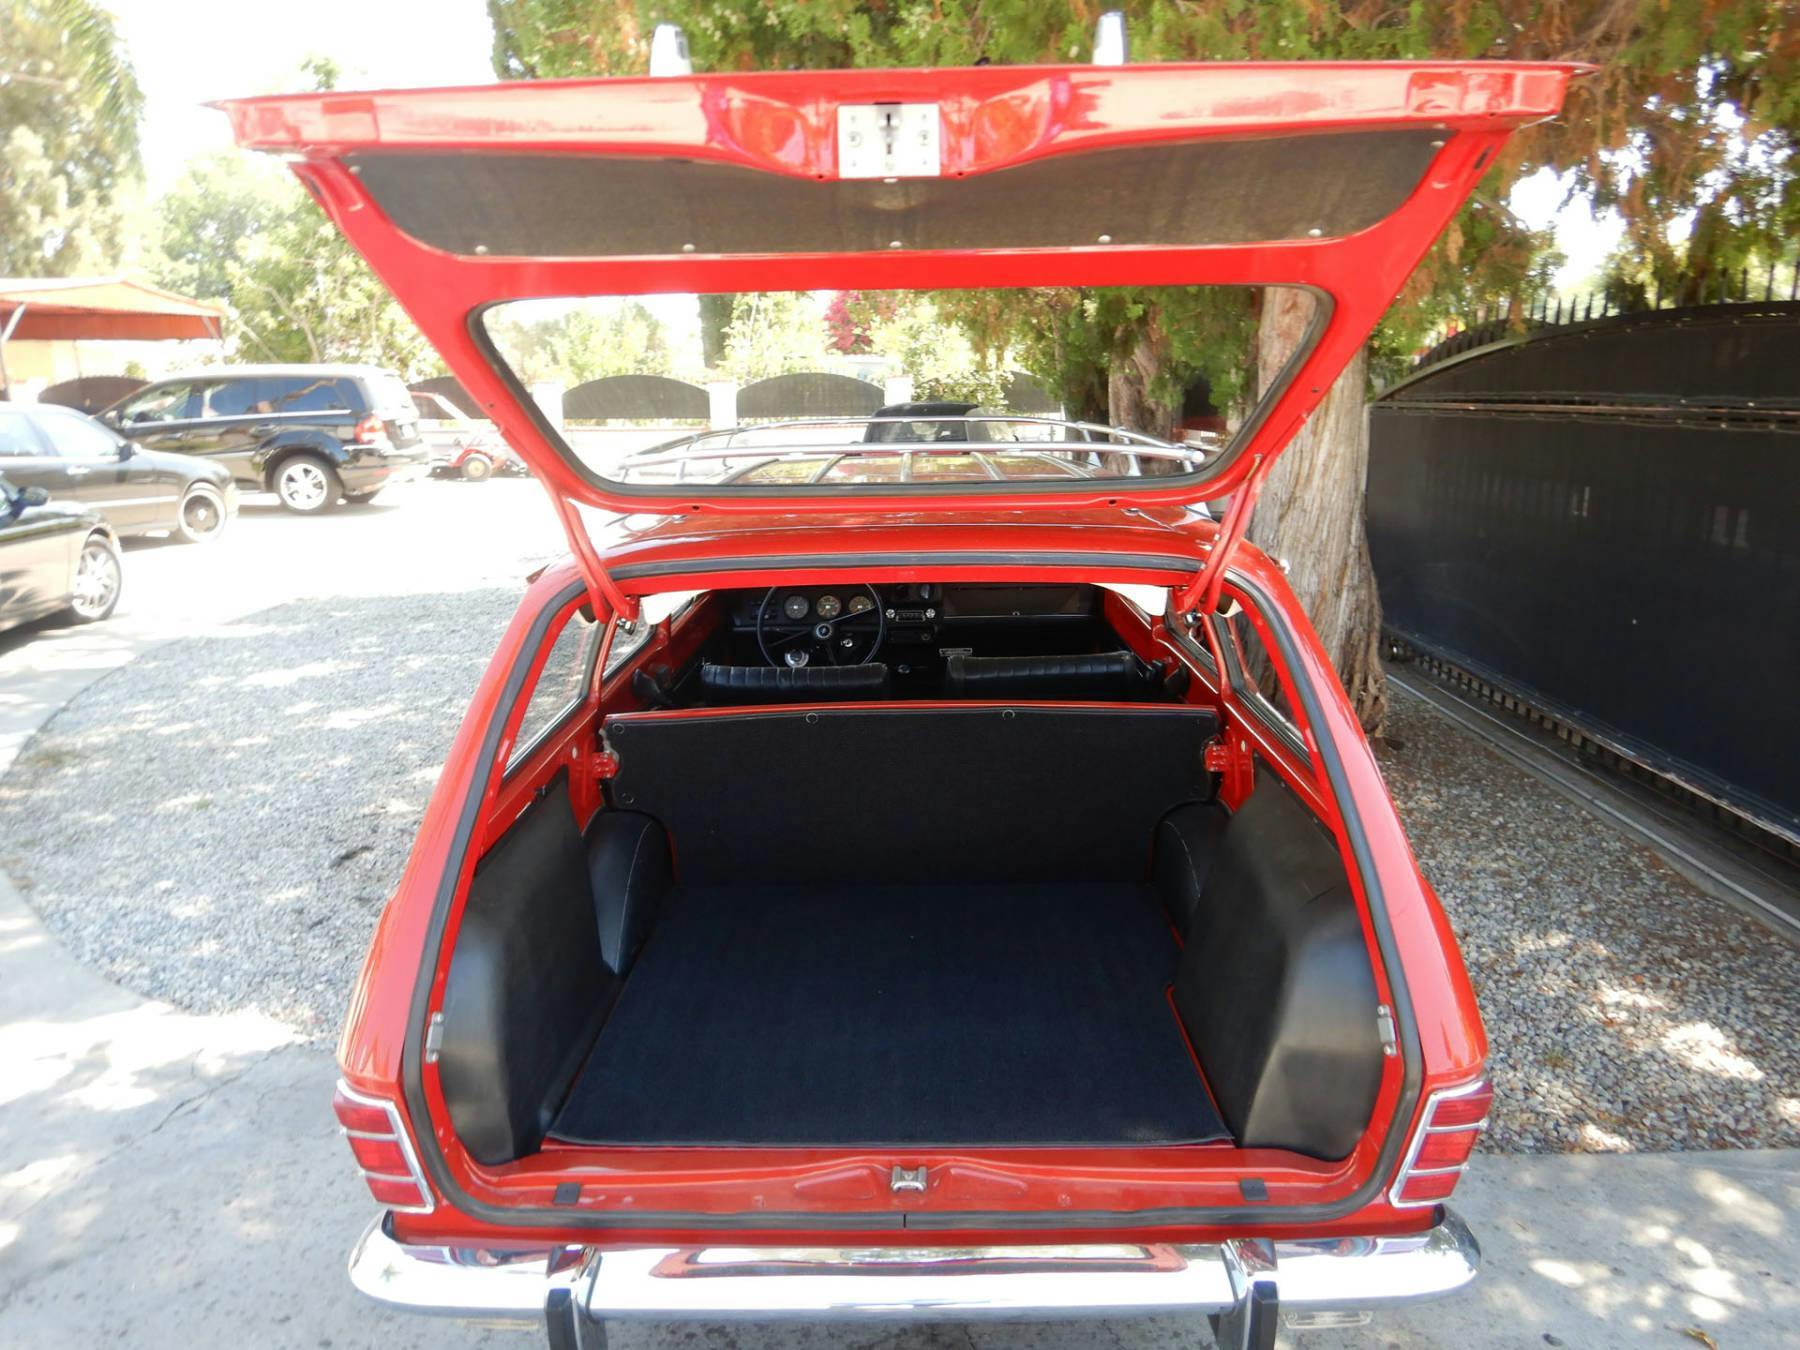 1968 Opel Kadett Deluxe Wagon rear